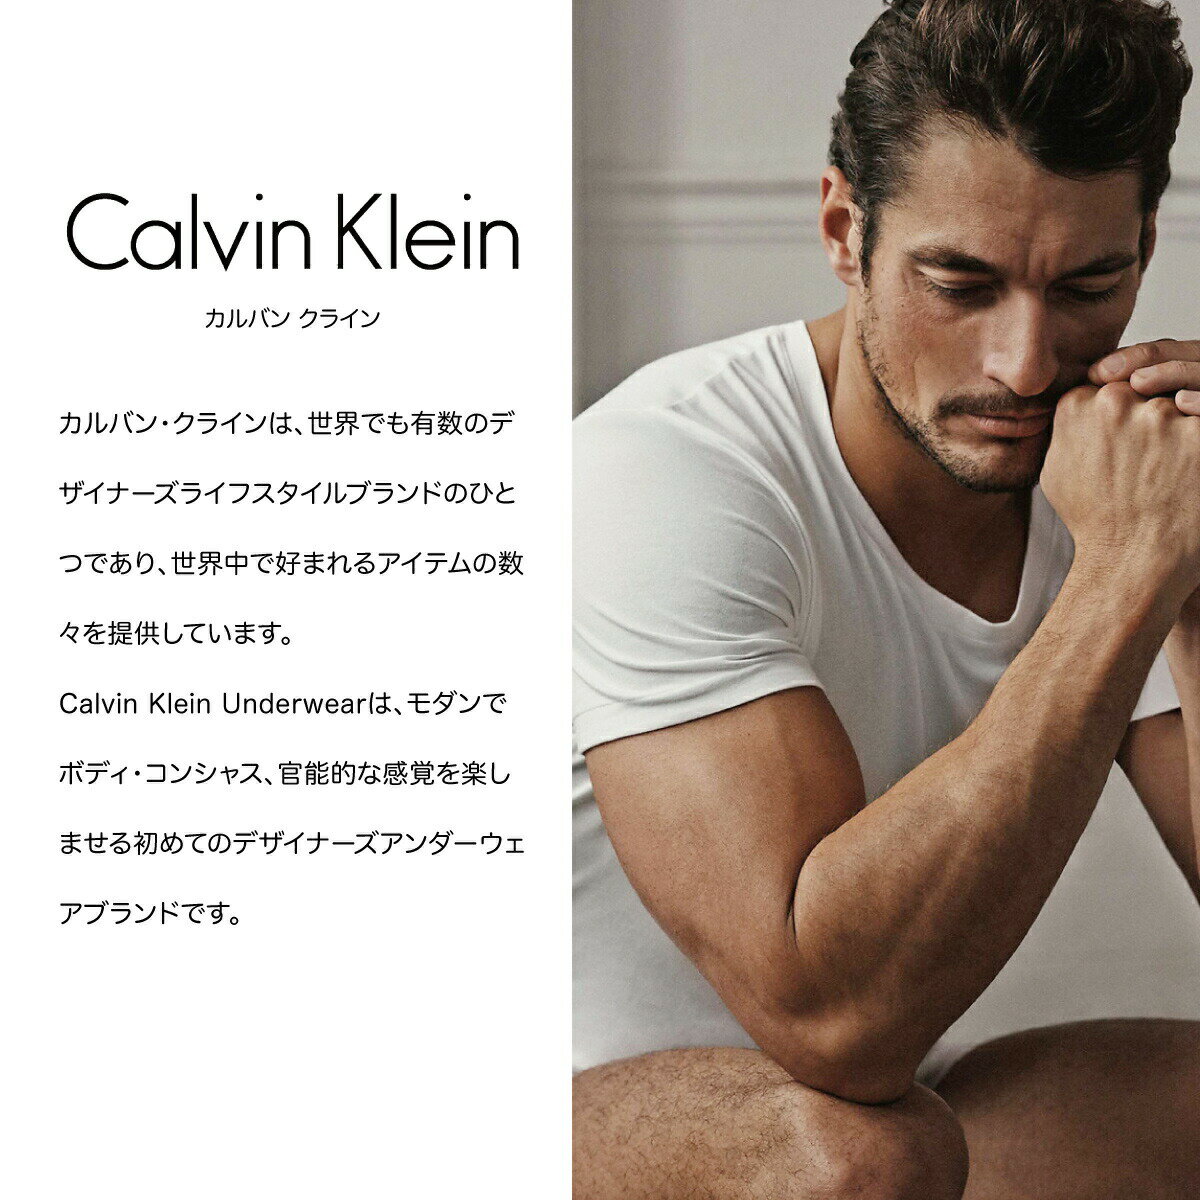 カルバンクライン ボクサーパンツ Calvin Klein 下着 アンダーウェア 3枚 メンズ 男性 コットン インナー ブラック ホワイト ブルー ロング パンツ 無地 シンプル 誕生日プレゼント 彼氏 父 男性 旦那 ギフト 大きいサイズ[衣類]